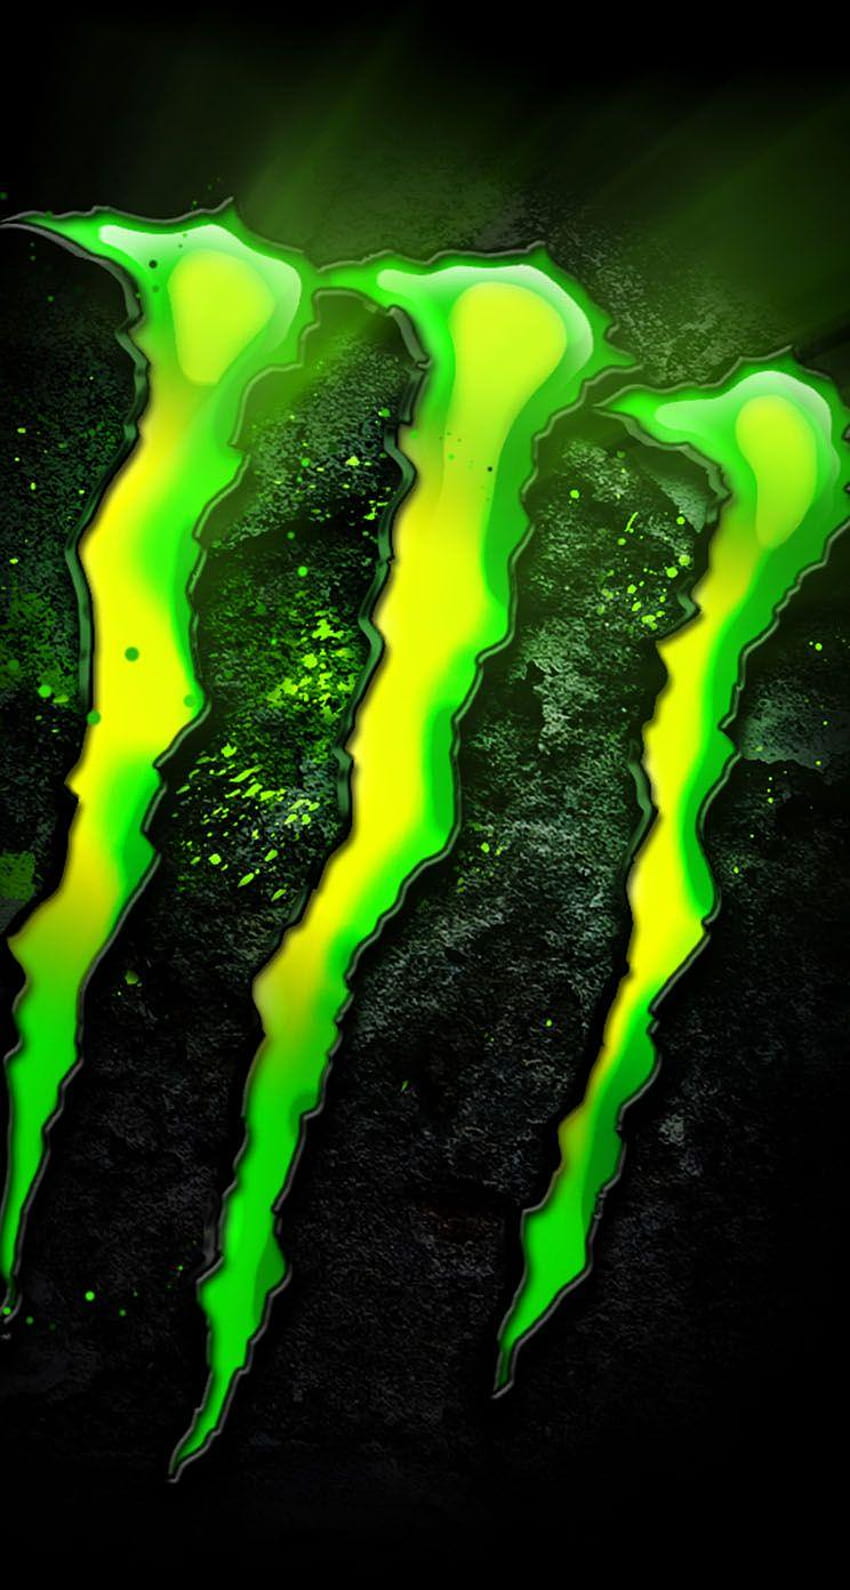 Monster Energy for iPhone, monster drink logo HD phone wallpaper